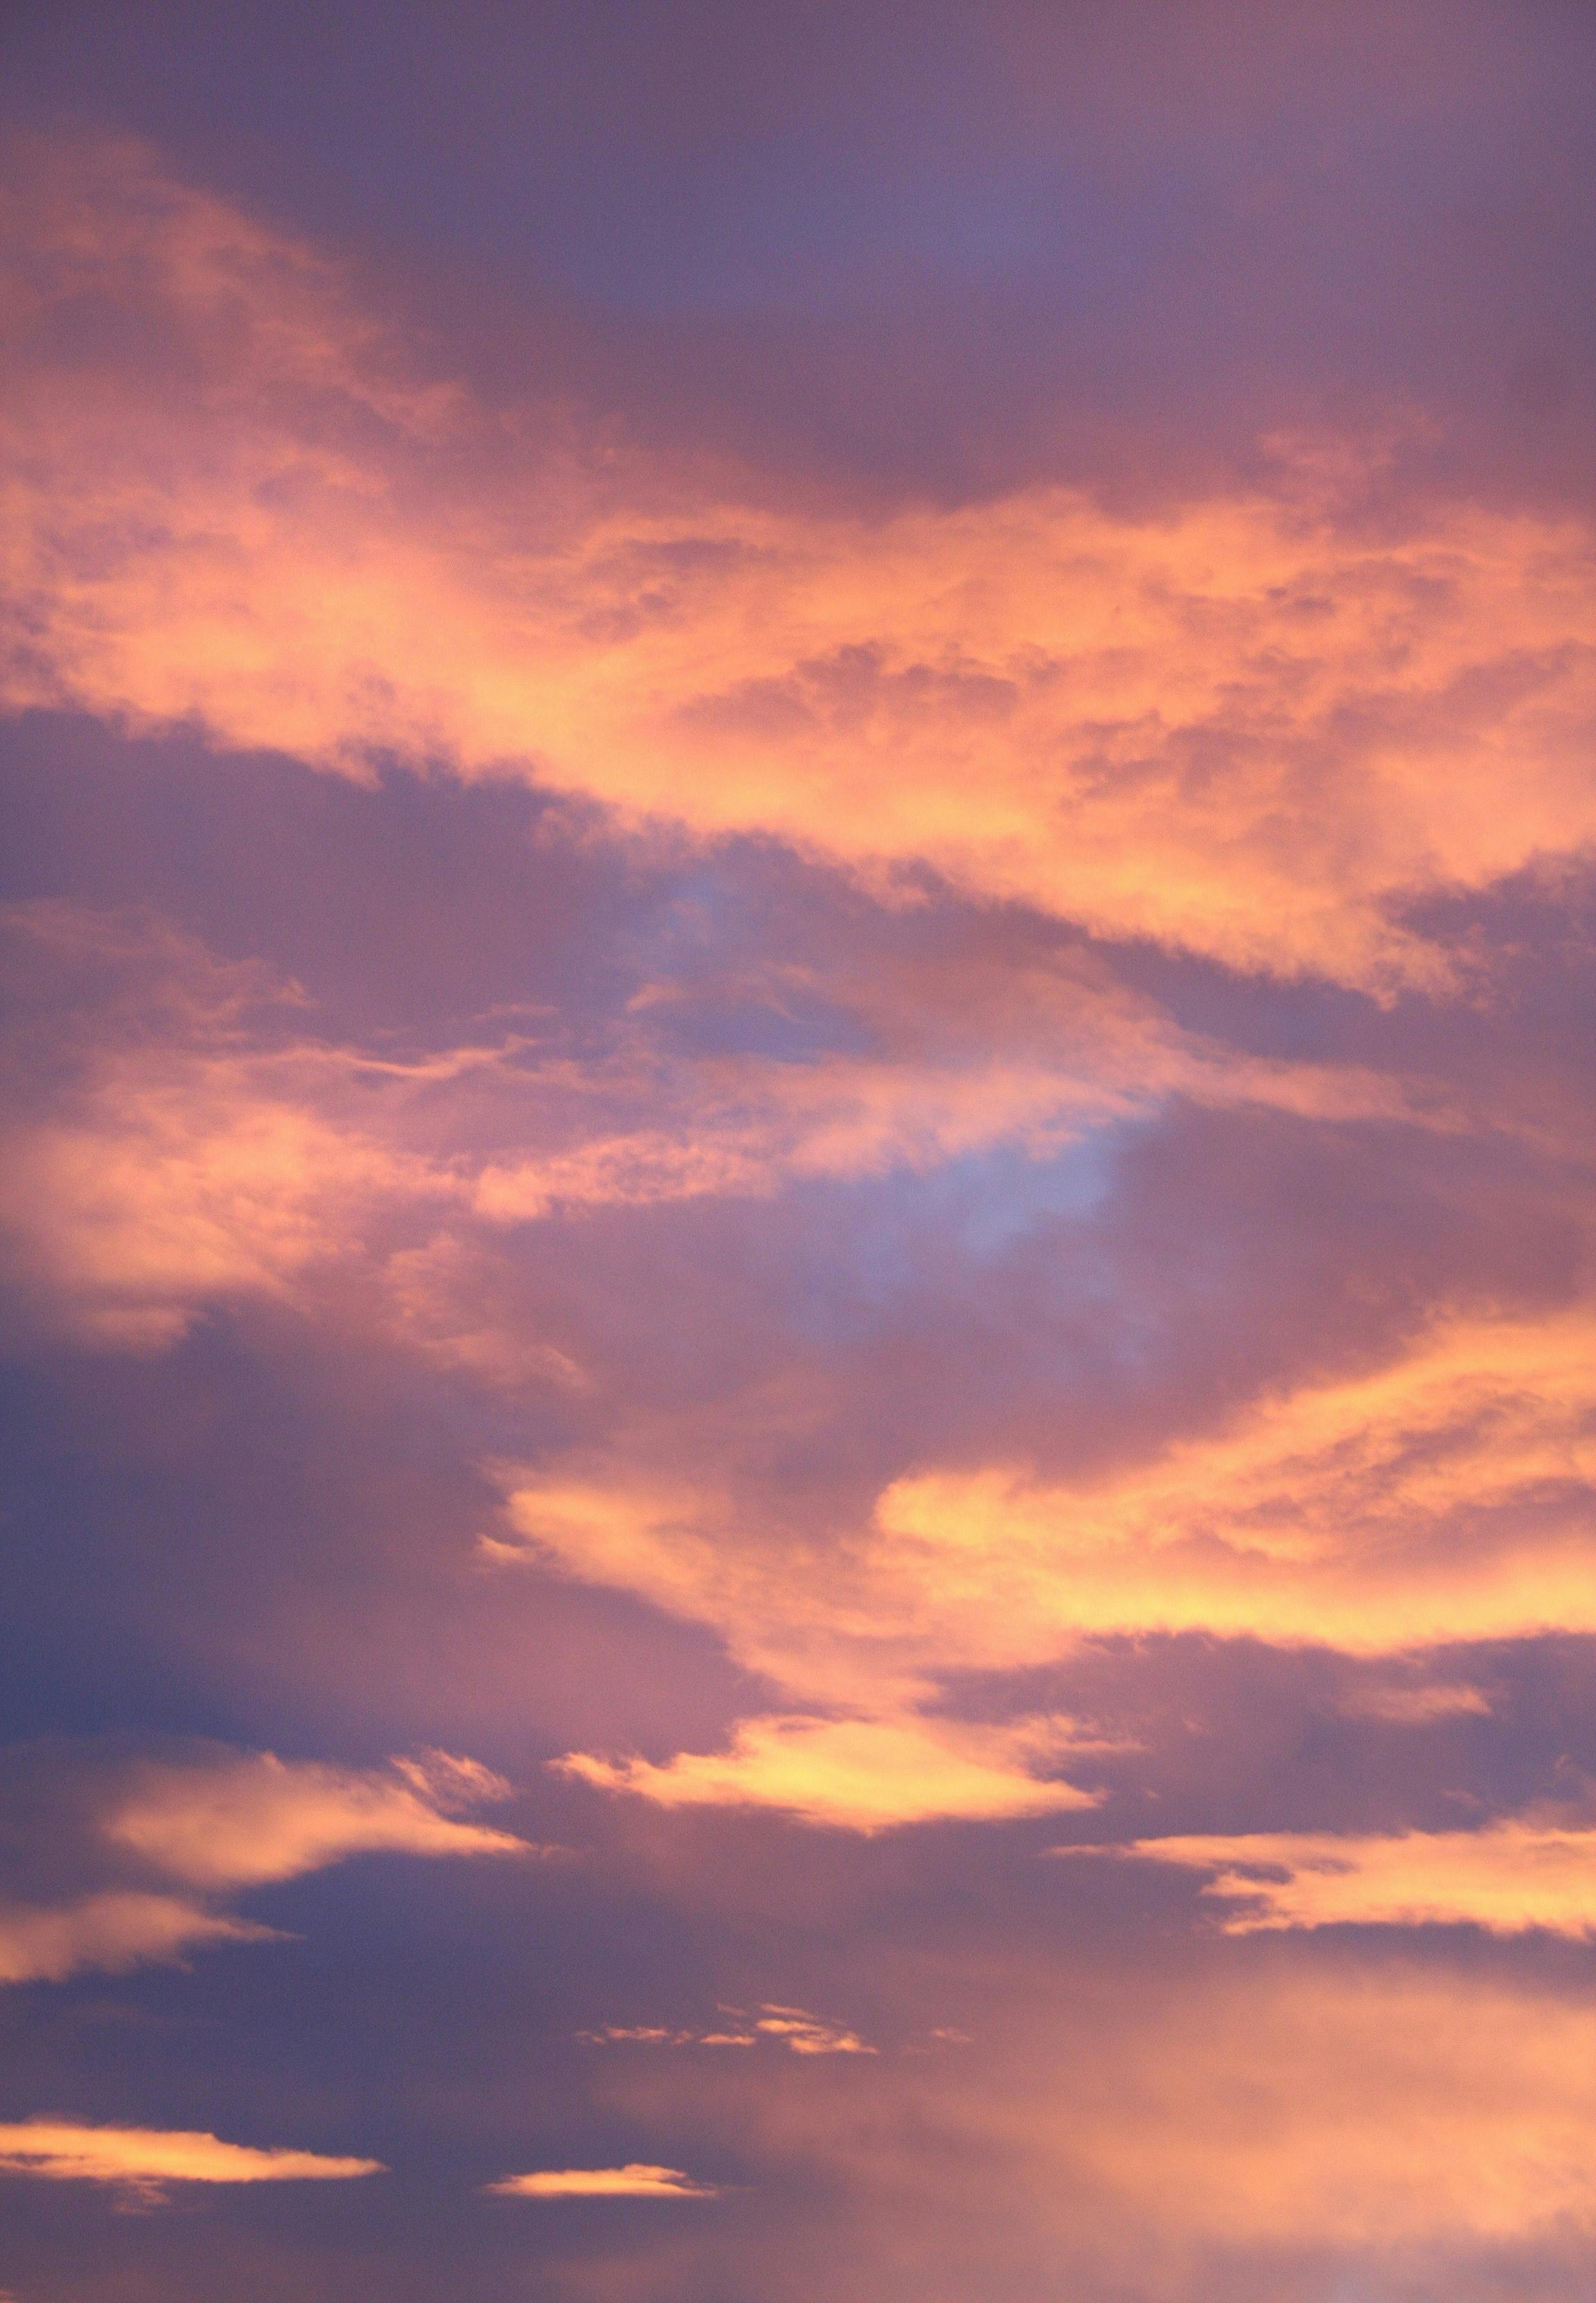 700.000+ ảnh đẹp nhất về Hình Nền Đám Mây · Tải xuống miễn phí 100% · Ảnh  có sẵn của Pexels